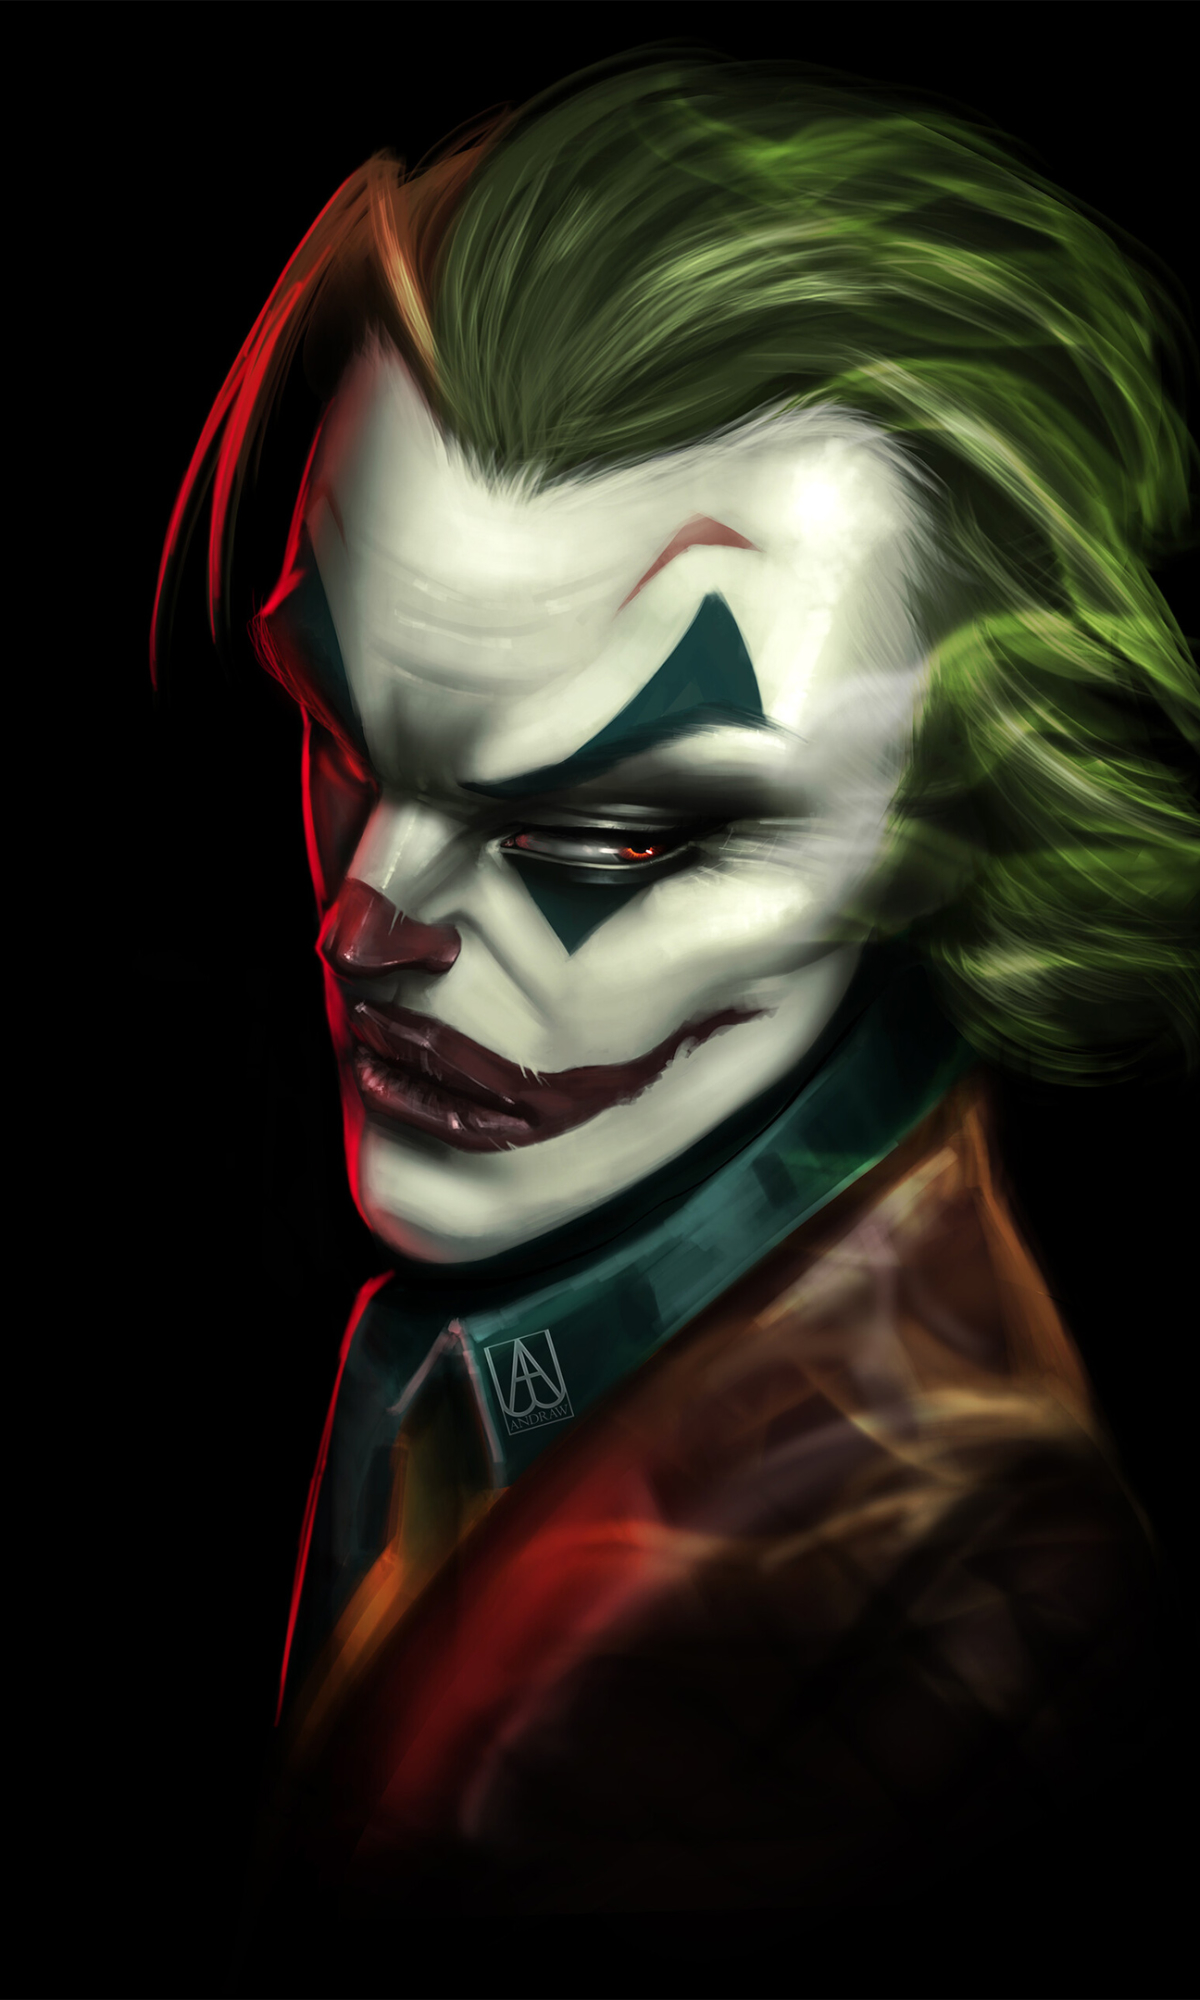 Joker Cartoon Art Wallpapers